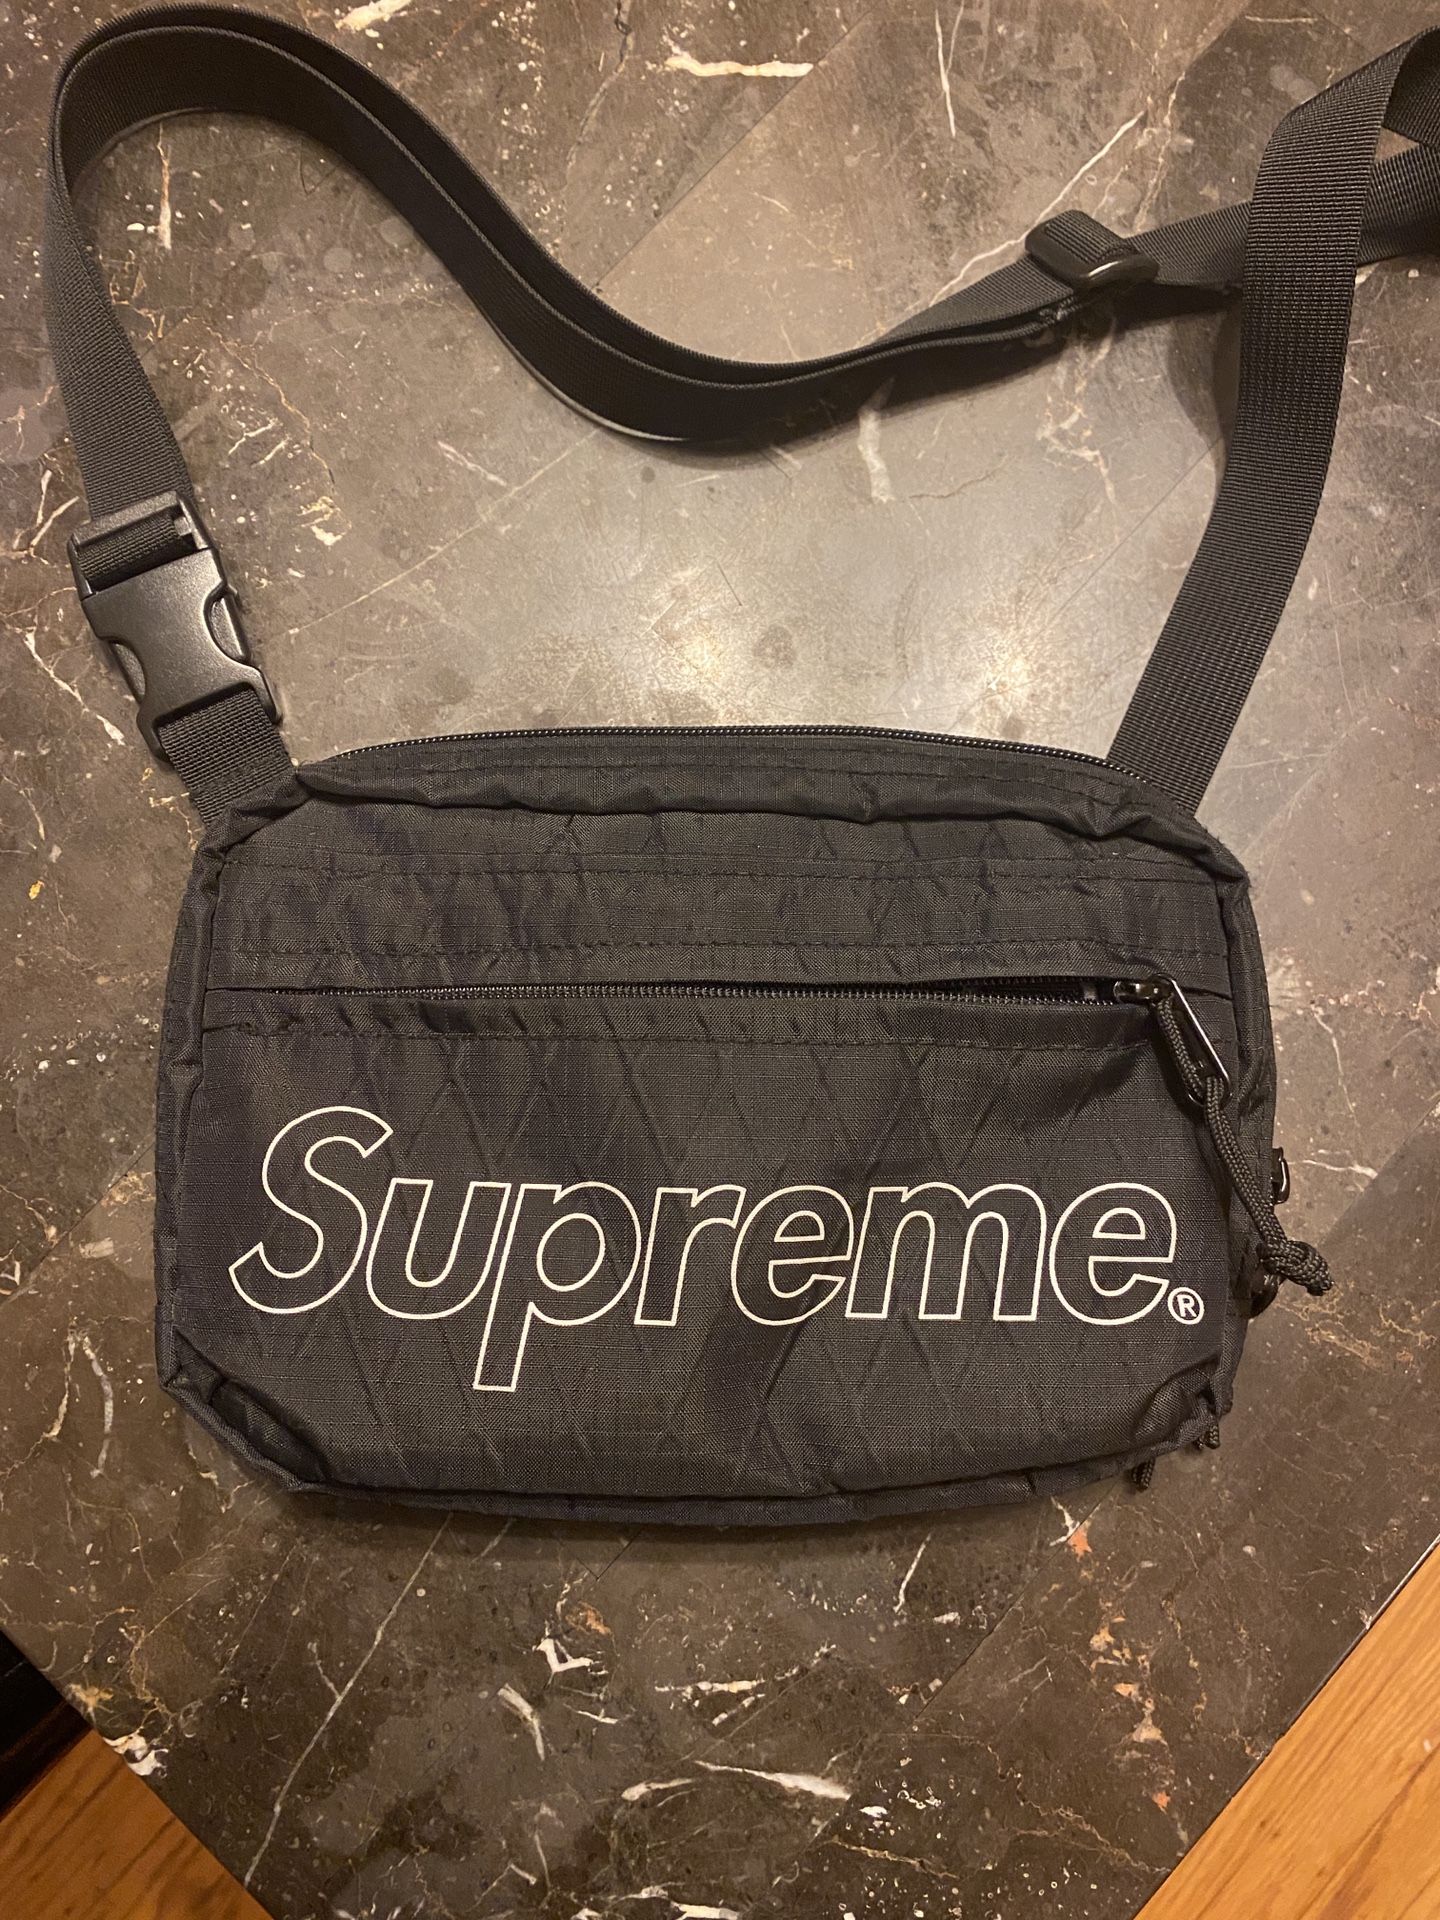 Supreme Shoulder Bag (FW18)